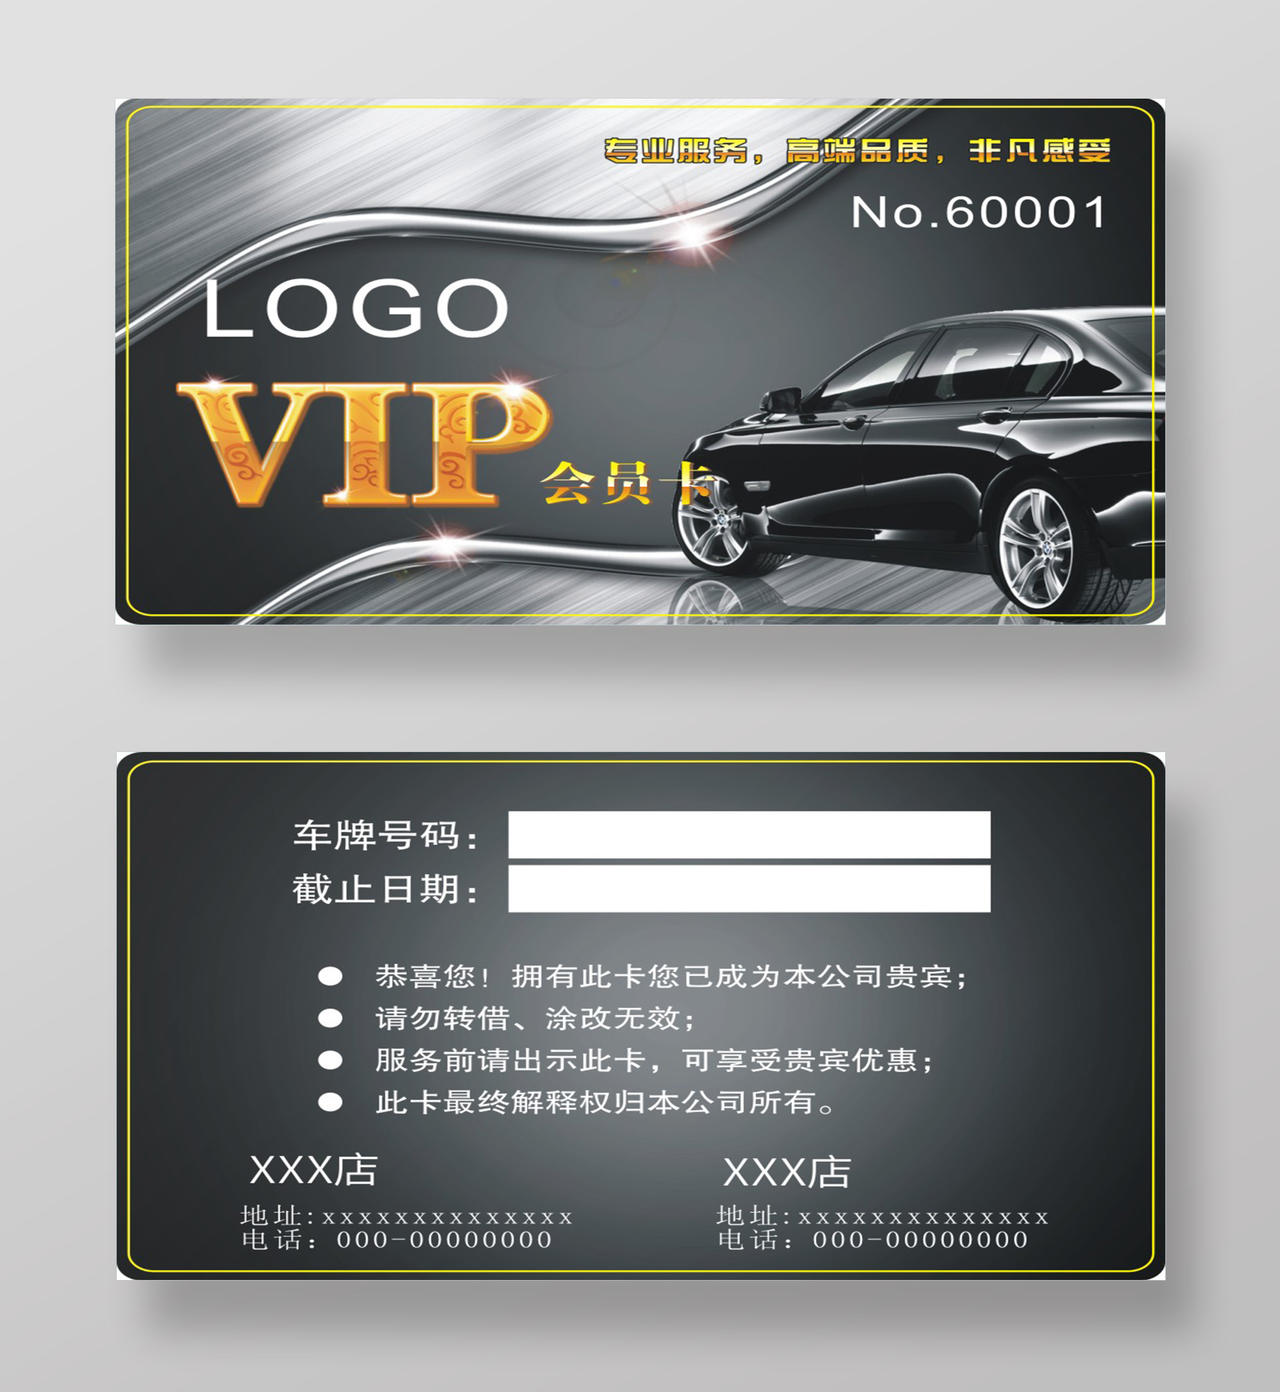 贵族气质银黑色大气风格汽车服务VIP会员卡